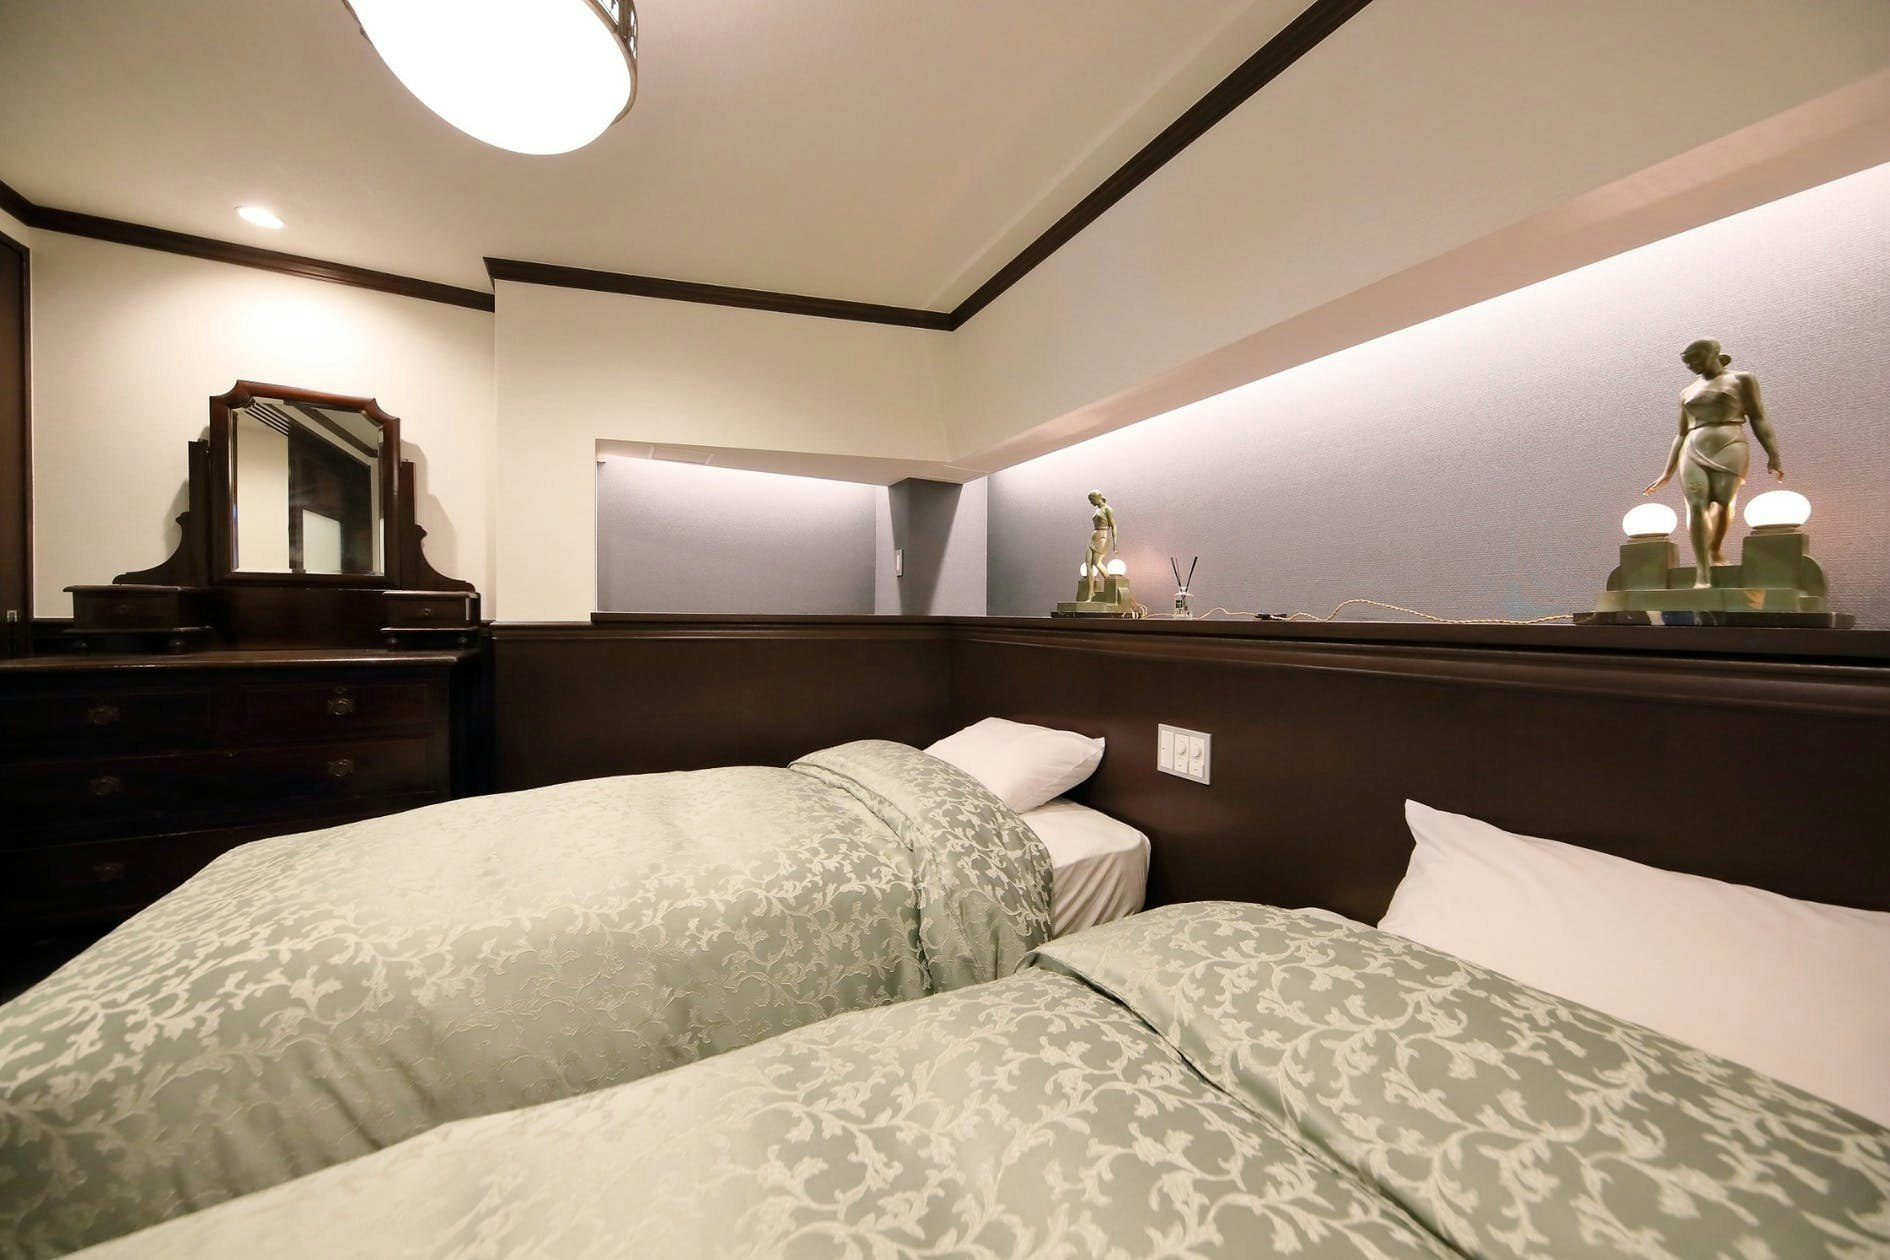 使い込まれたシャビーな質感を持つ家具でコーディネートされたインテリアスタイルのお部屋です。